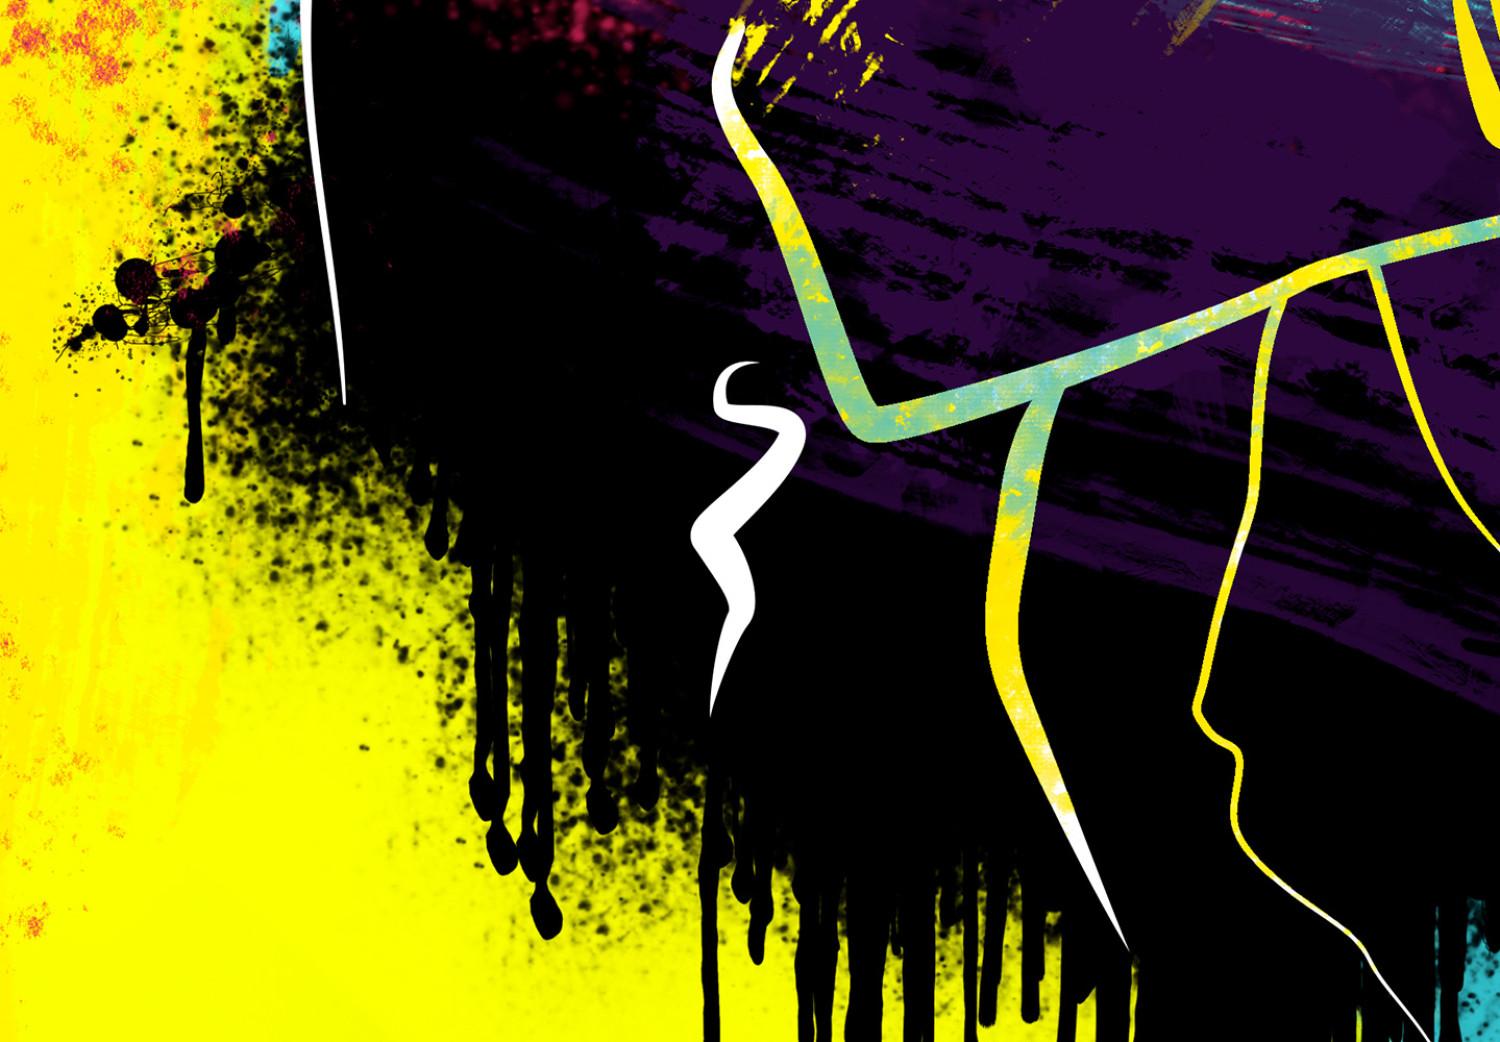 Cuadro moderno Arte callejero - gráficos coloridos y juveniles con una figura humana